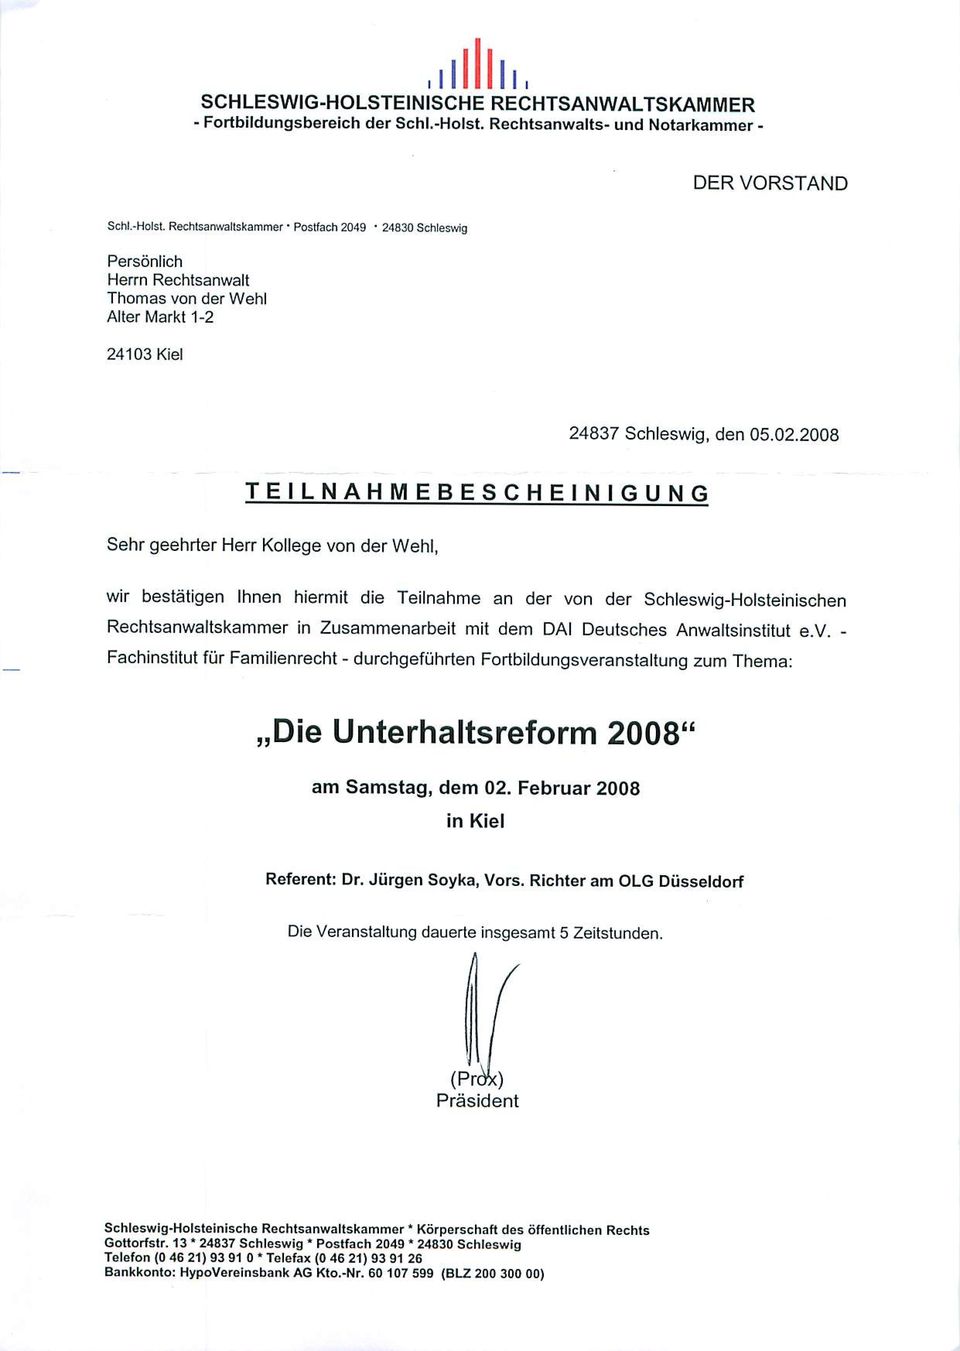 , wir bestätigen Ihnen hiermit die Teilnahme an der von der Schleswig-Holsteischen Rechtsanwaltskammer Zusammenarbeit mit dem DAI Deutsches Anwaitsstitut e.v. - Fachstitut für Familienrecht - durchgeführten Fortbildungsveranstaltung zum Thema: Die Unterhaltsreform 2008" am Samstag, dem 02.